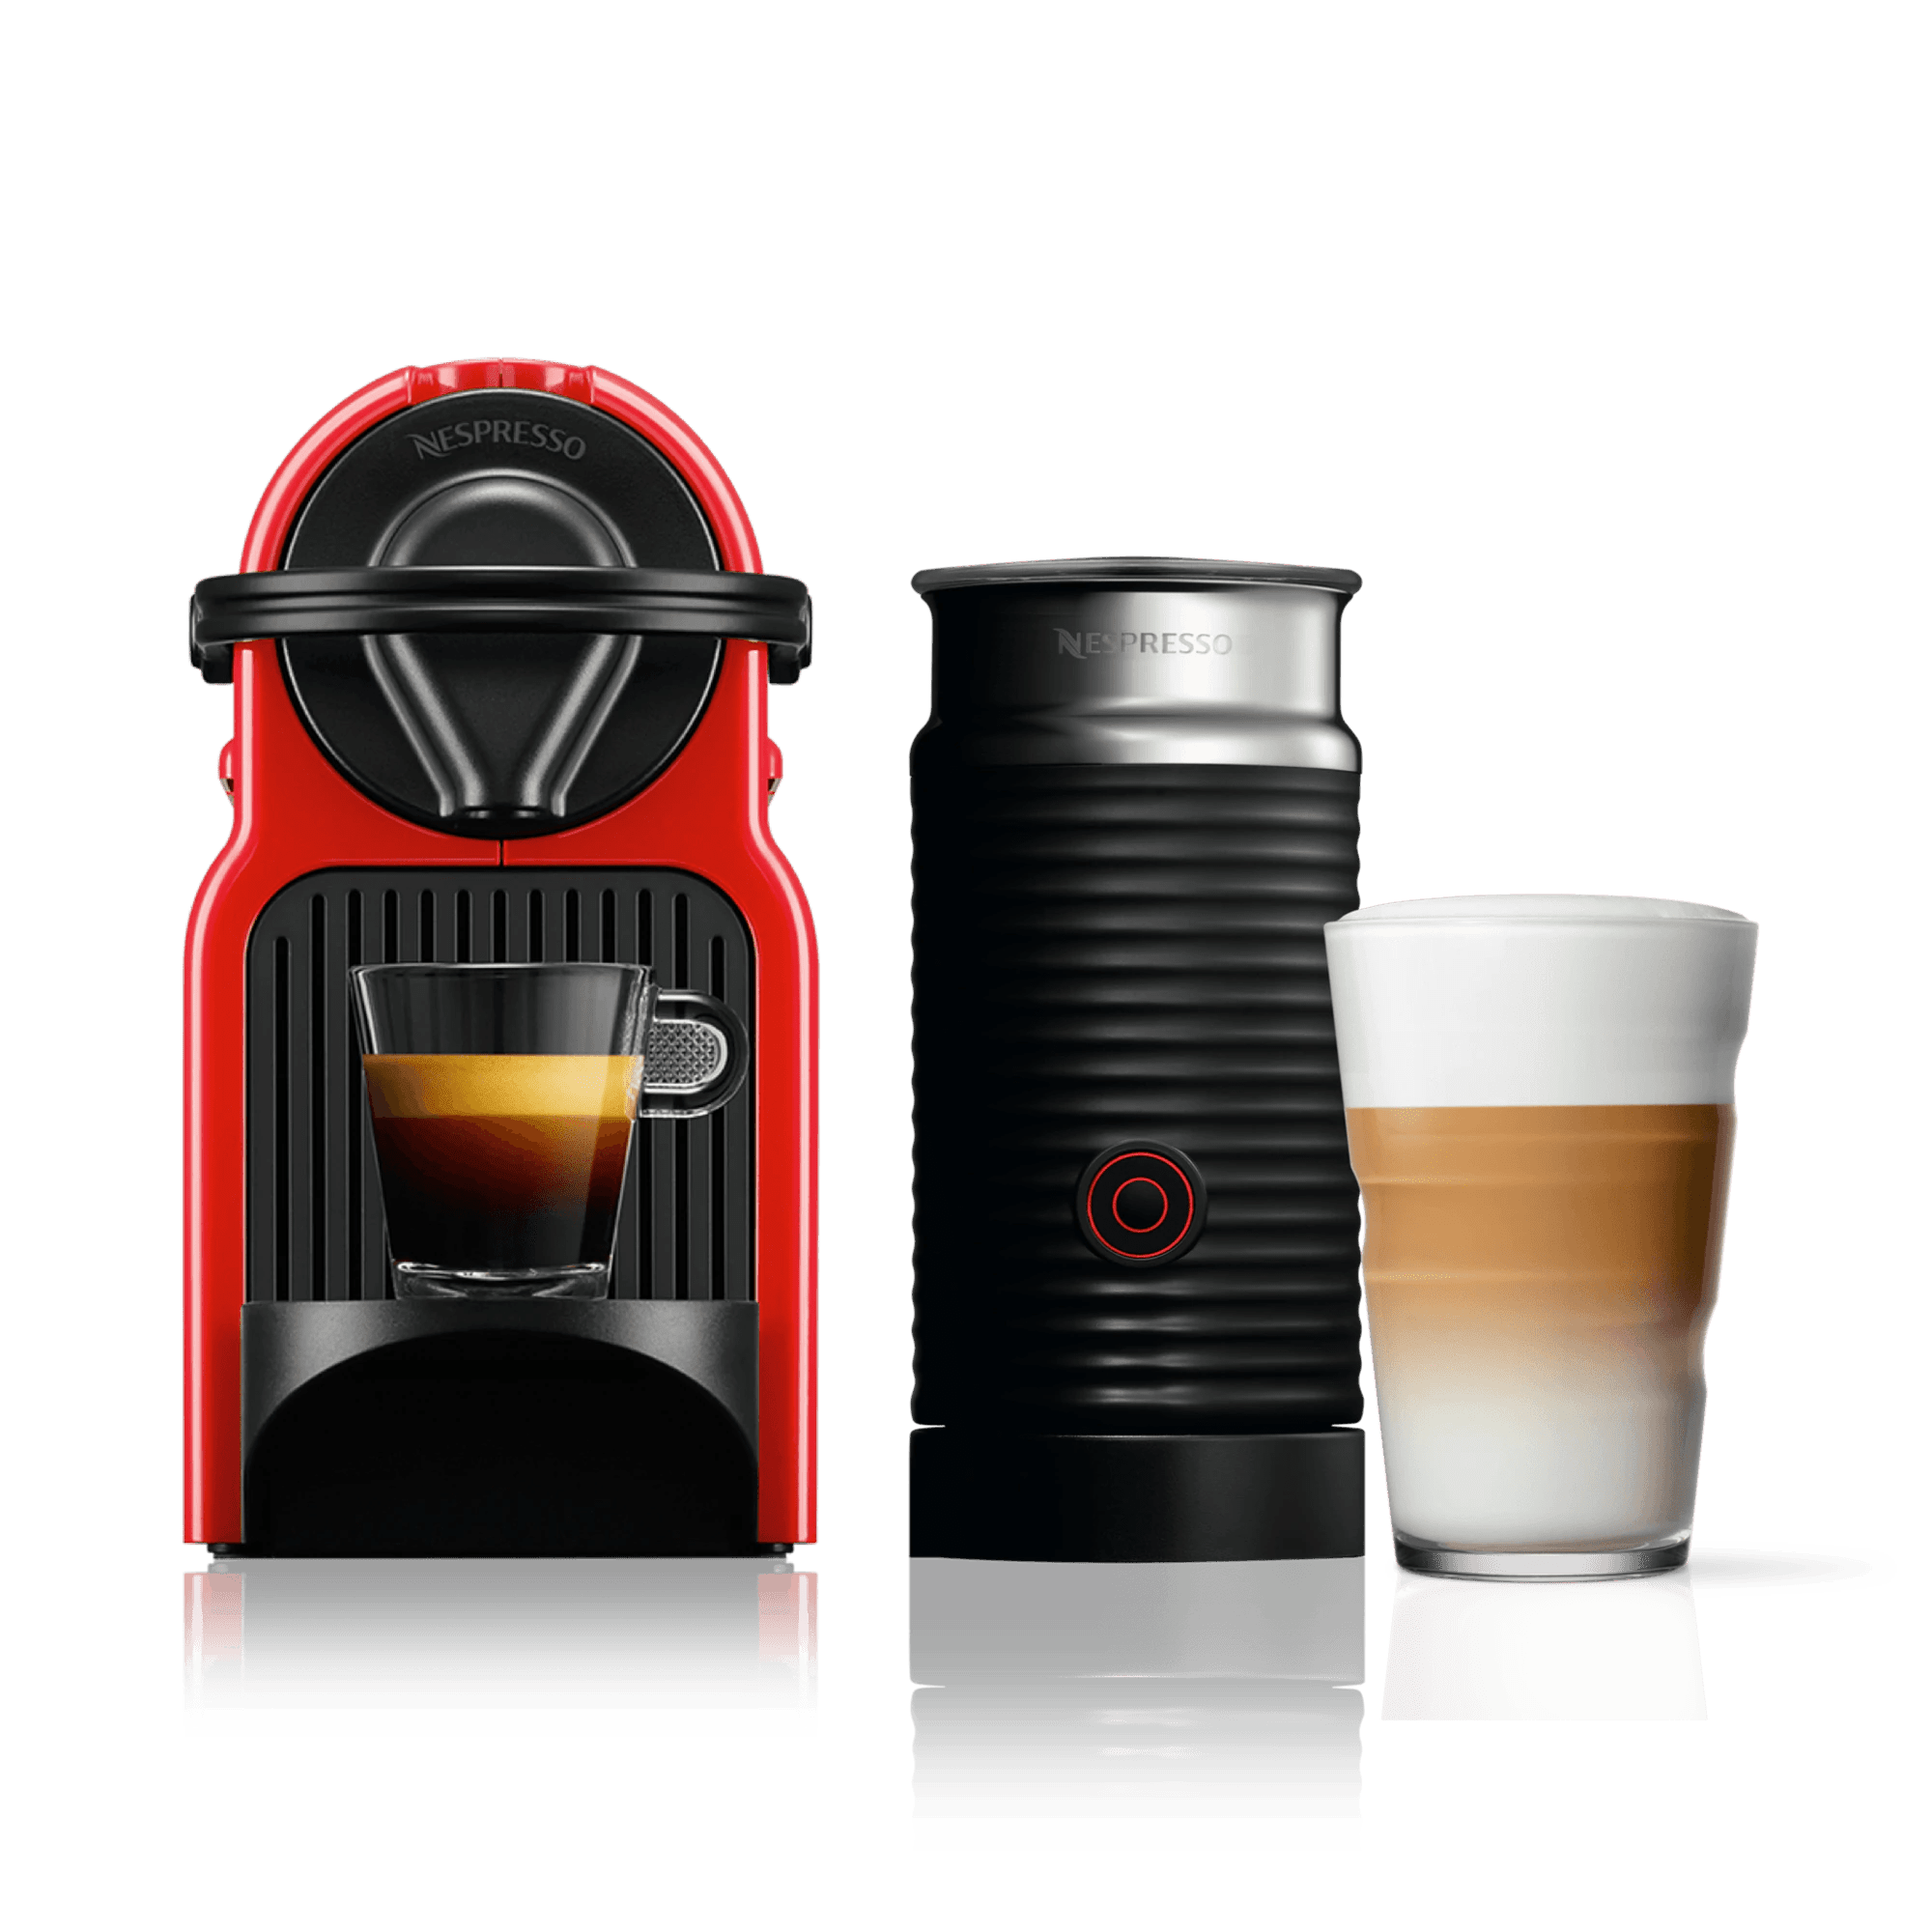 Nespresso Coffee Machines: Compare Models & Prices | Nespresso™ SG